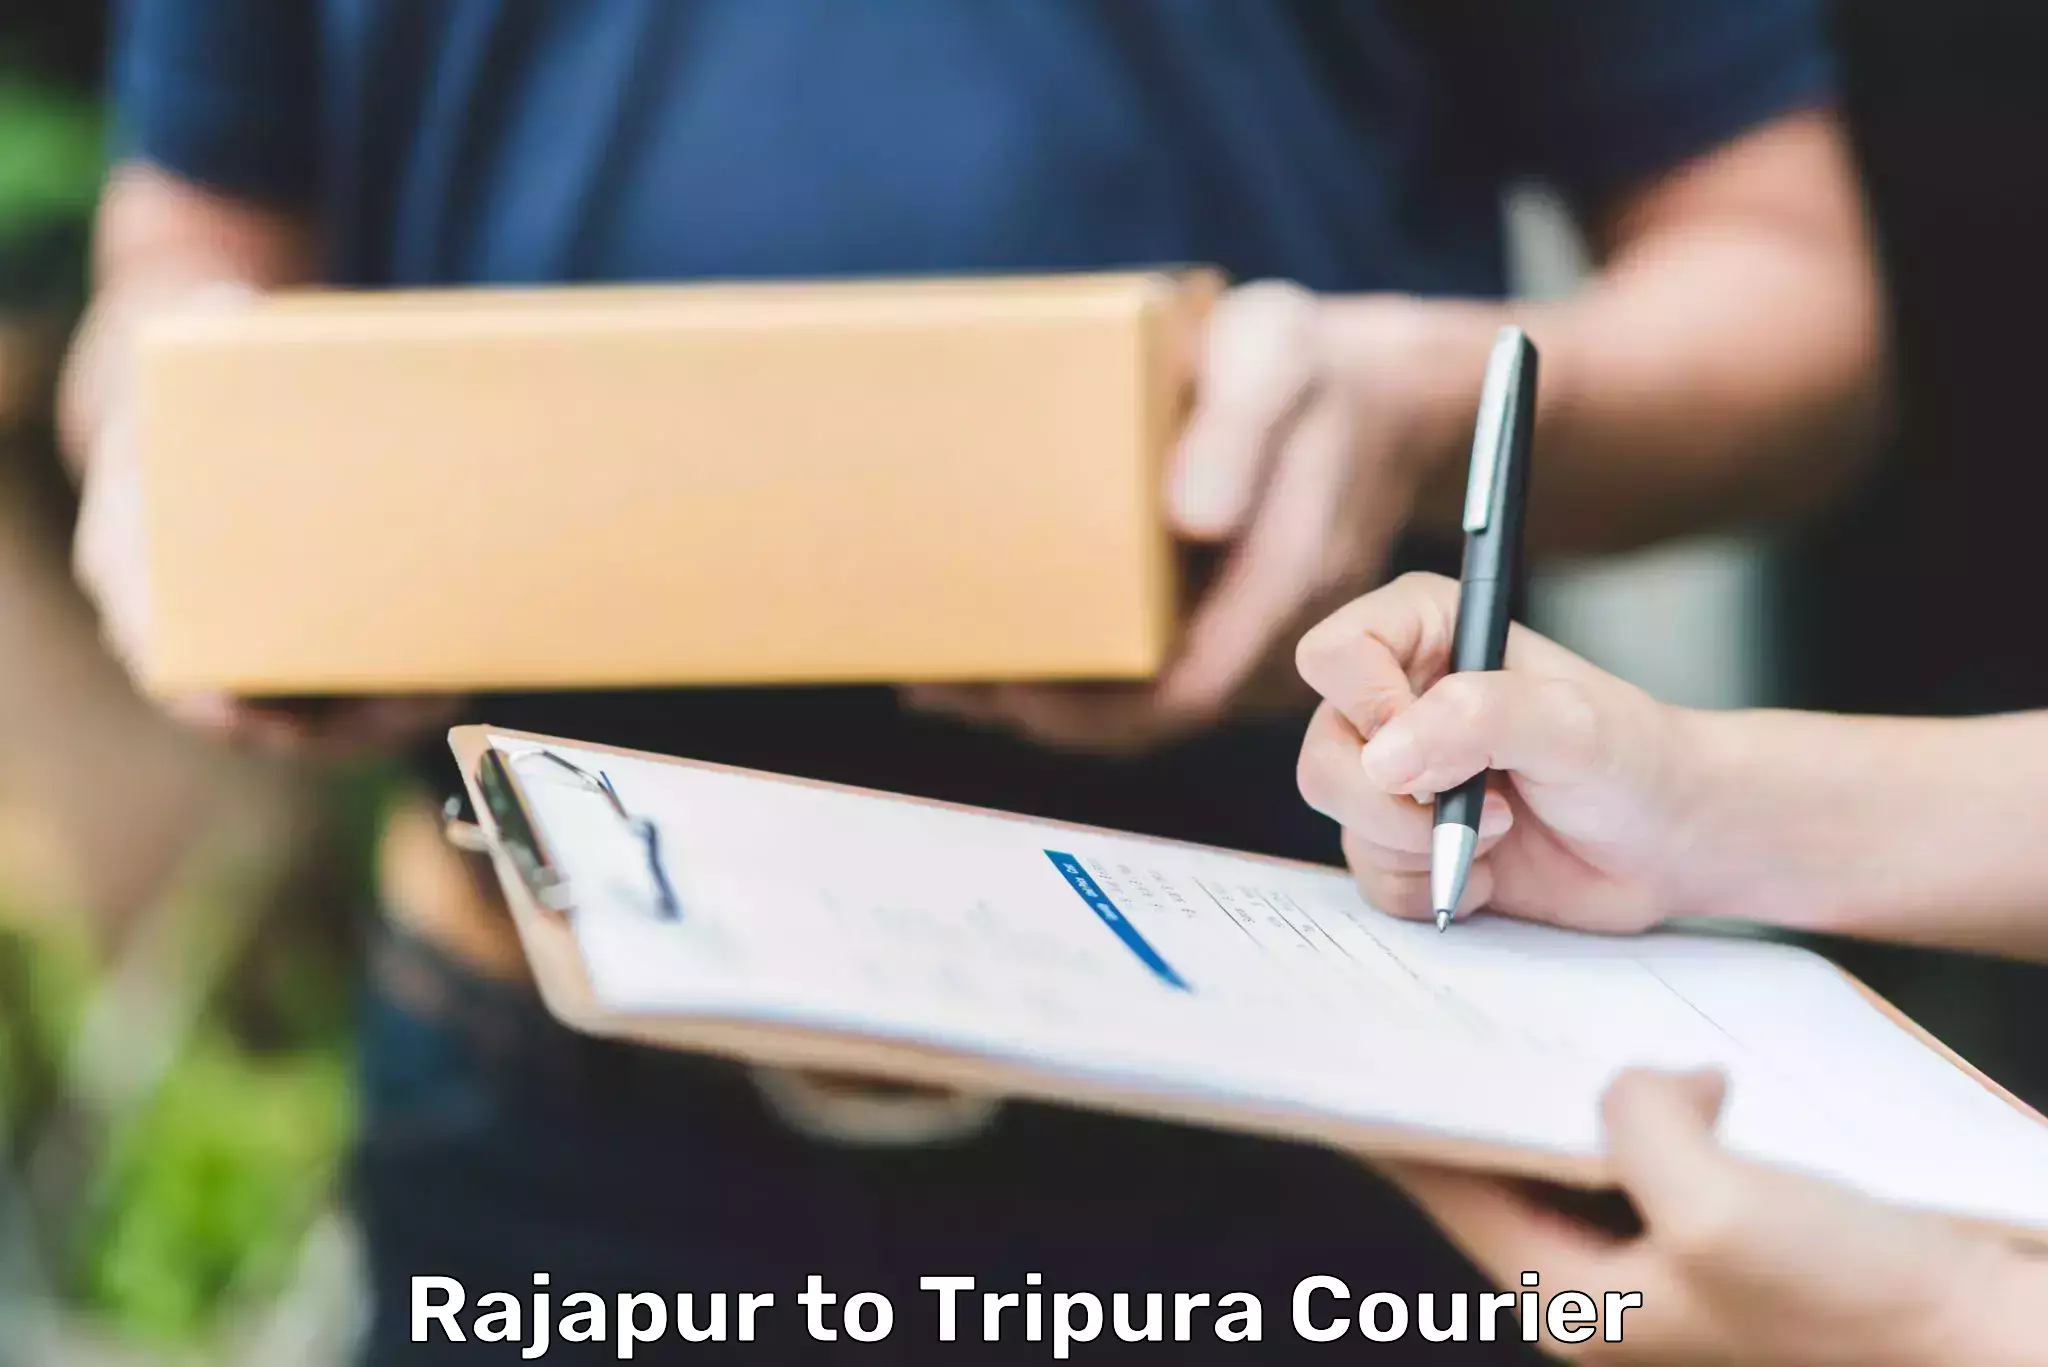 Digital courier platforms Rajapur to Bishalgarh